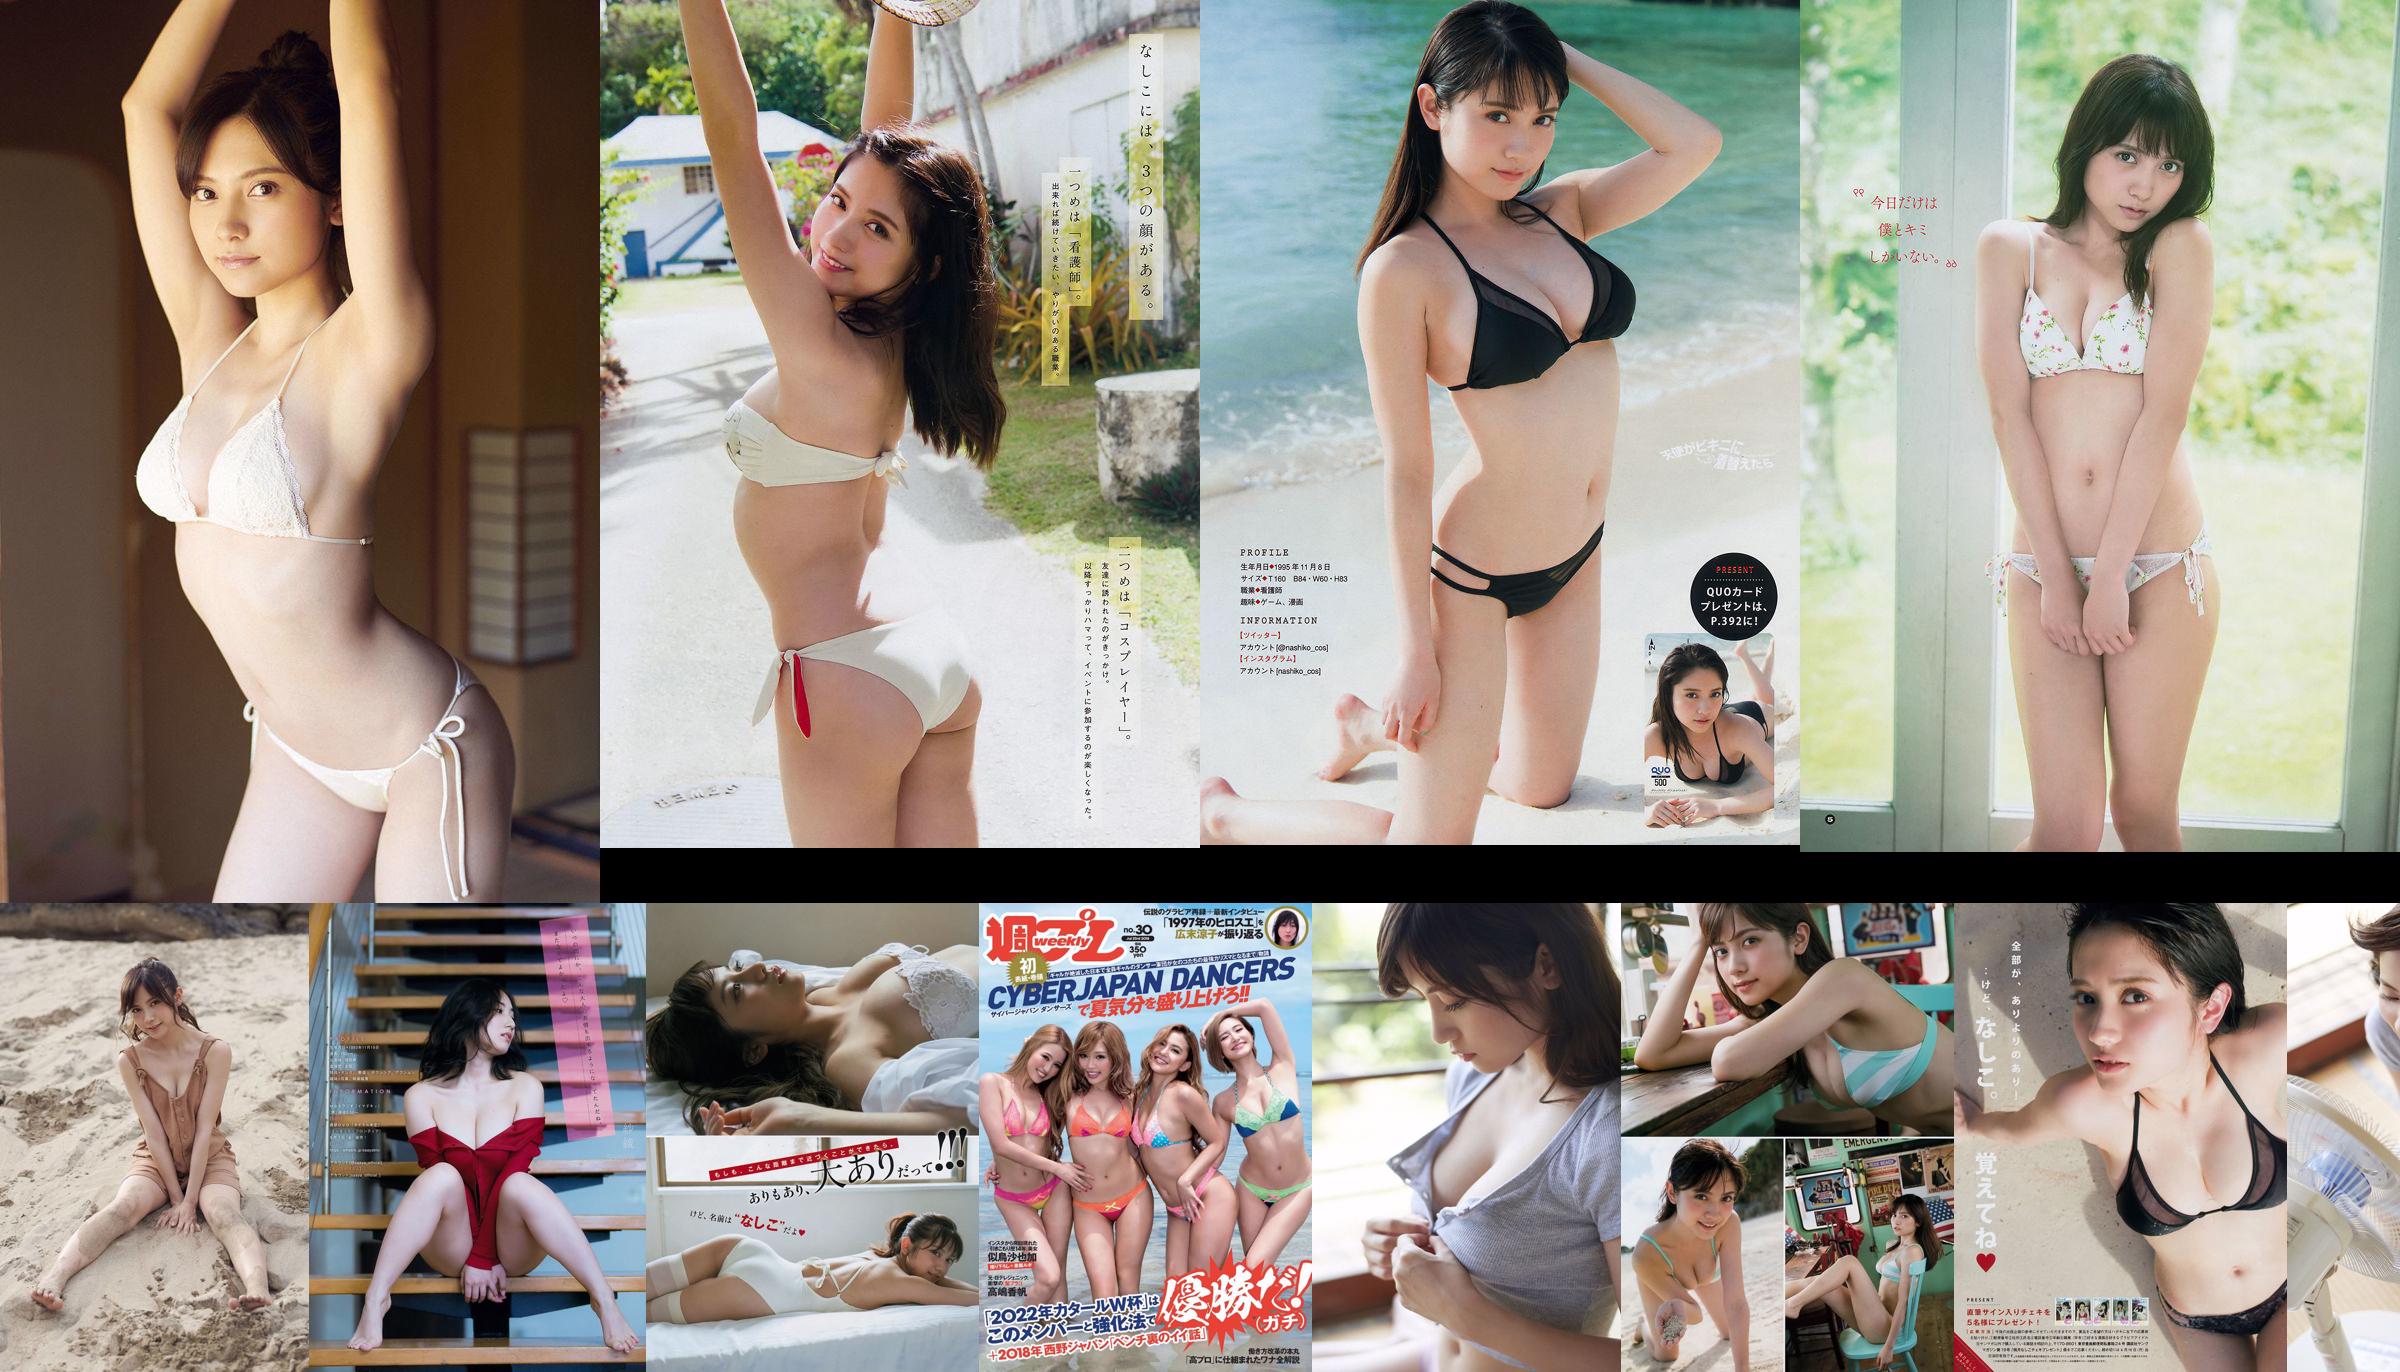 [Young Magazine] Nashiko Momotsuki Saaya 2018 No.39 Photo No.9dd1c5 Page 1